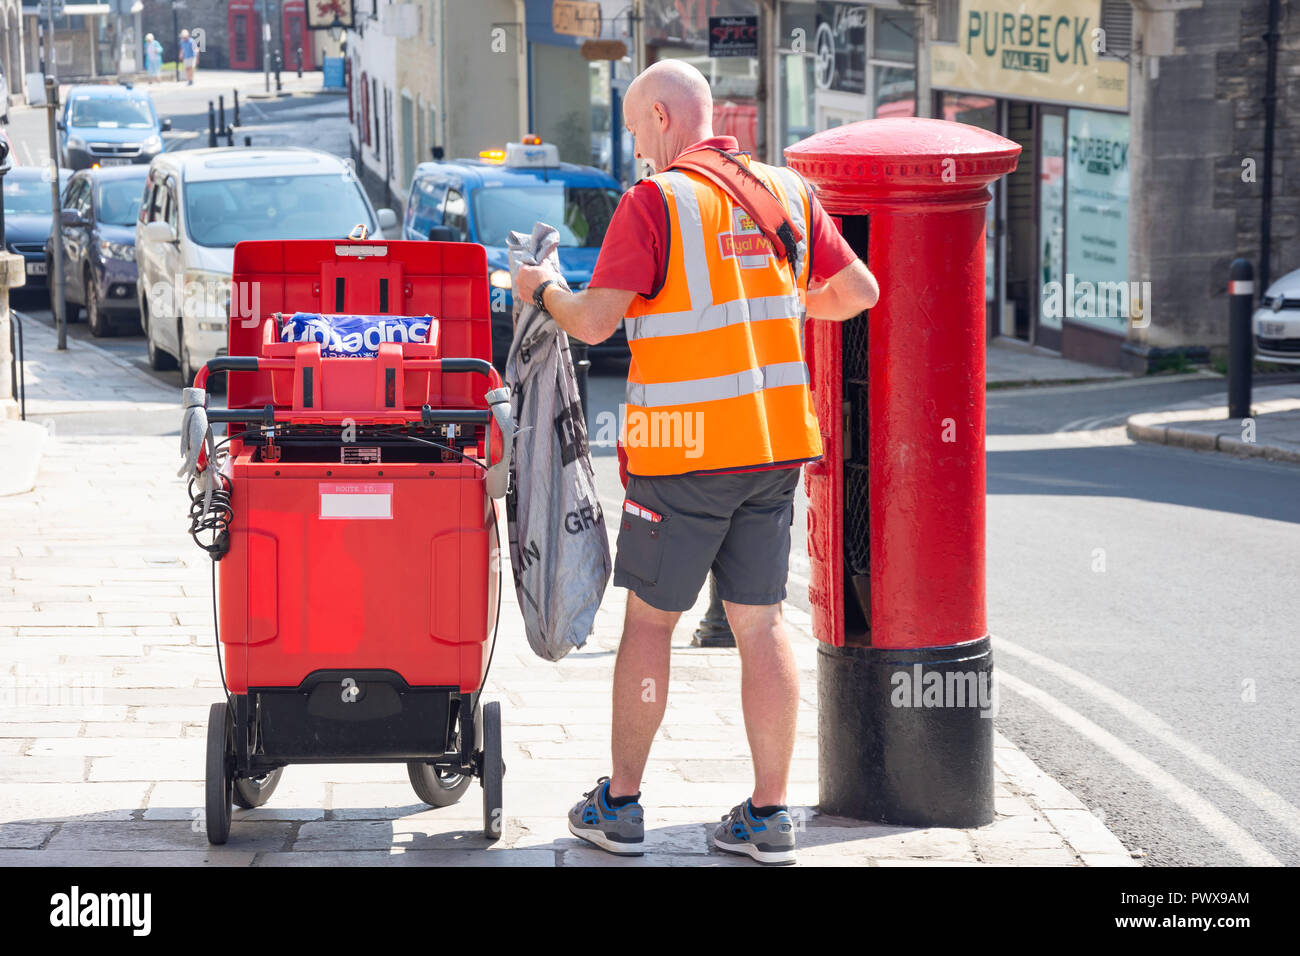 Royal Mail Postbote beim Entleeren eines Post Box, High Street, Swanage, Isle of Purbeck, Dorset, England, Vereinigtes Königreich Stockfoto